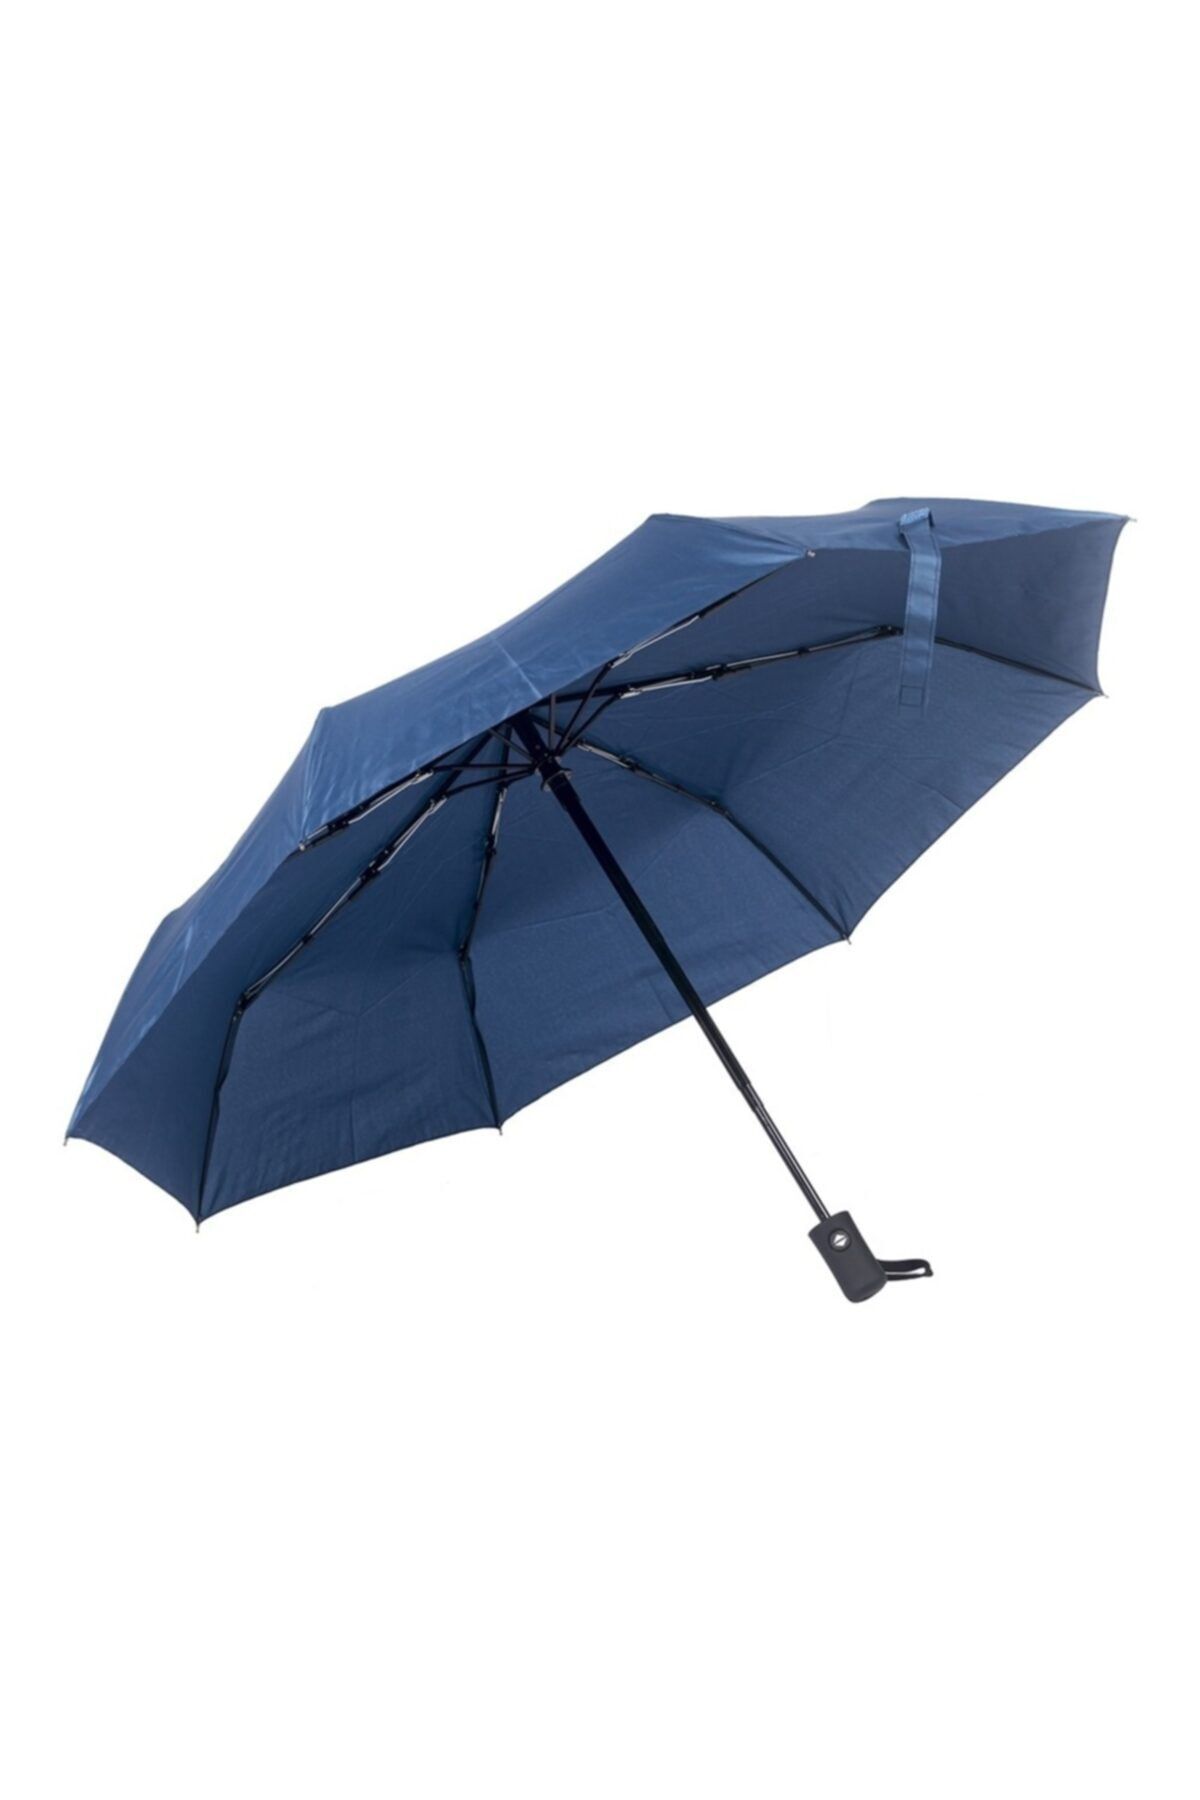 ELEVEN MARKETS Full Otomatik 8 Telli Rüzgâra Dayanıklı Mavi Şemsiyesi